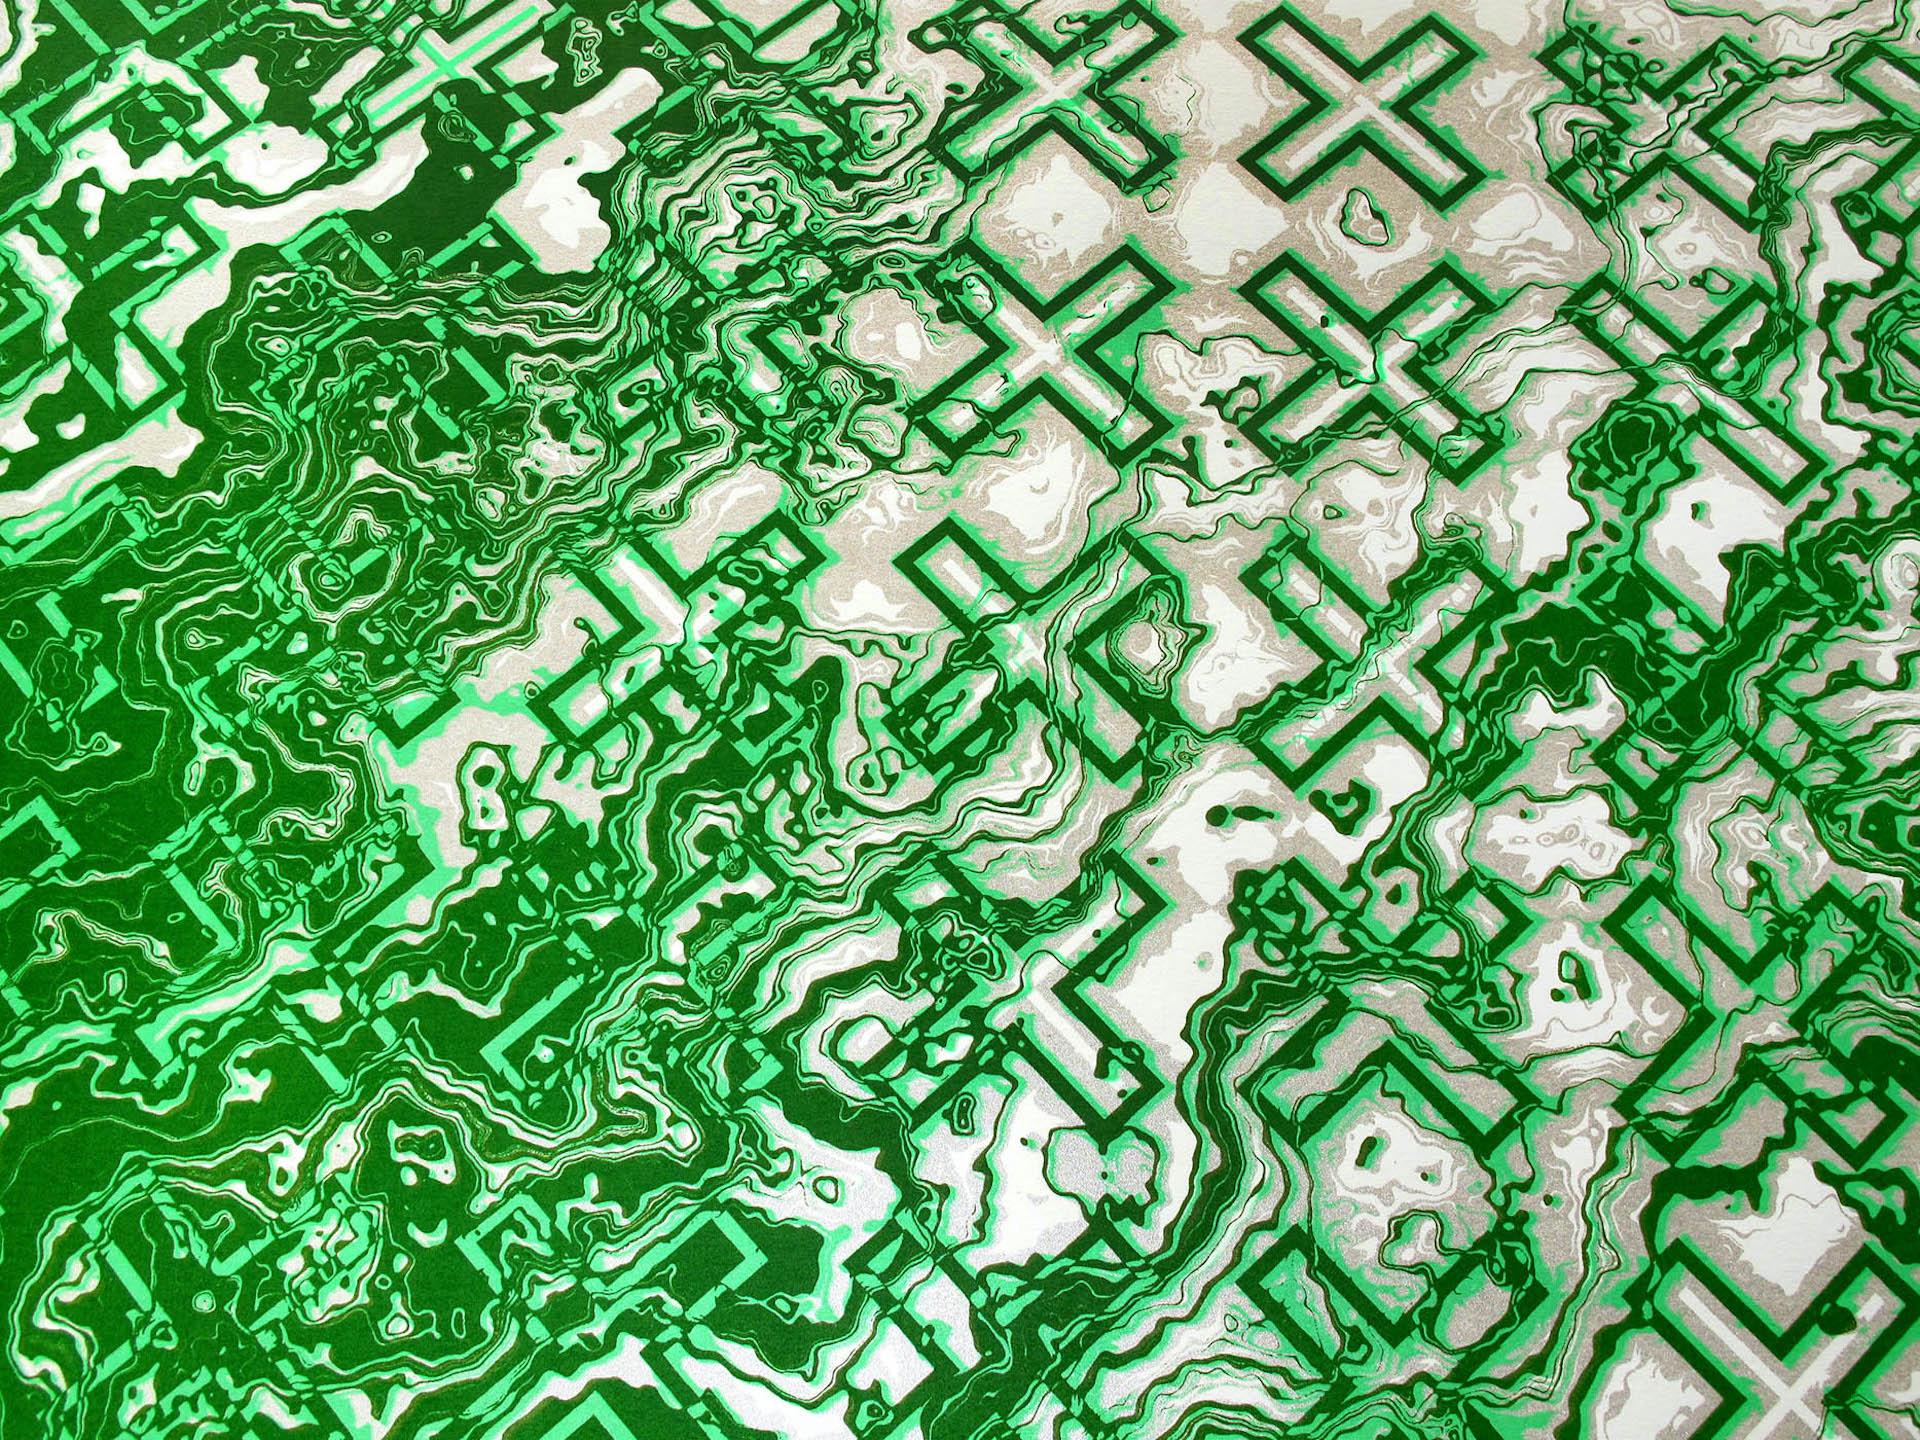 Chris Keegan, Green Flow, Limited Edition Silkscreen Print, Abstract Art 2